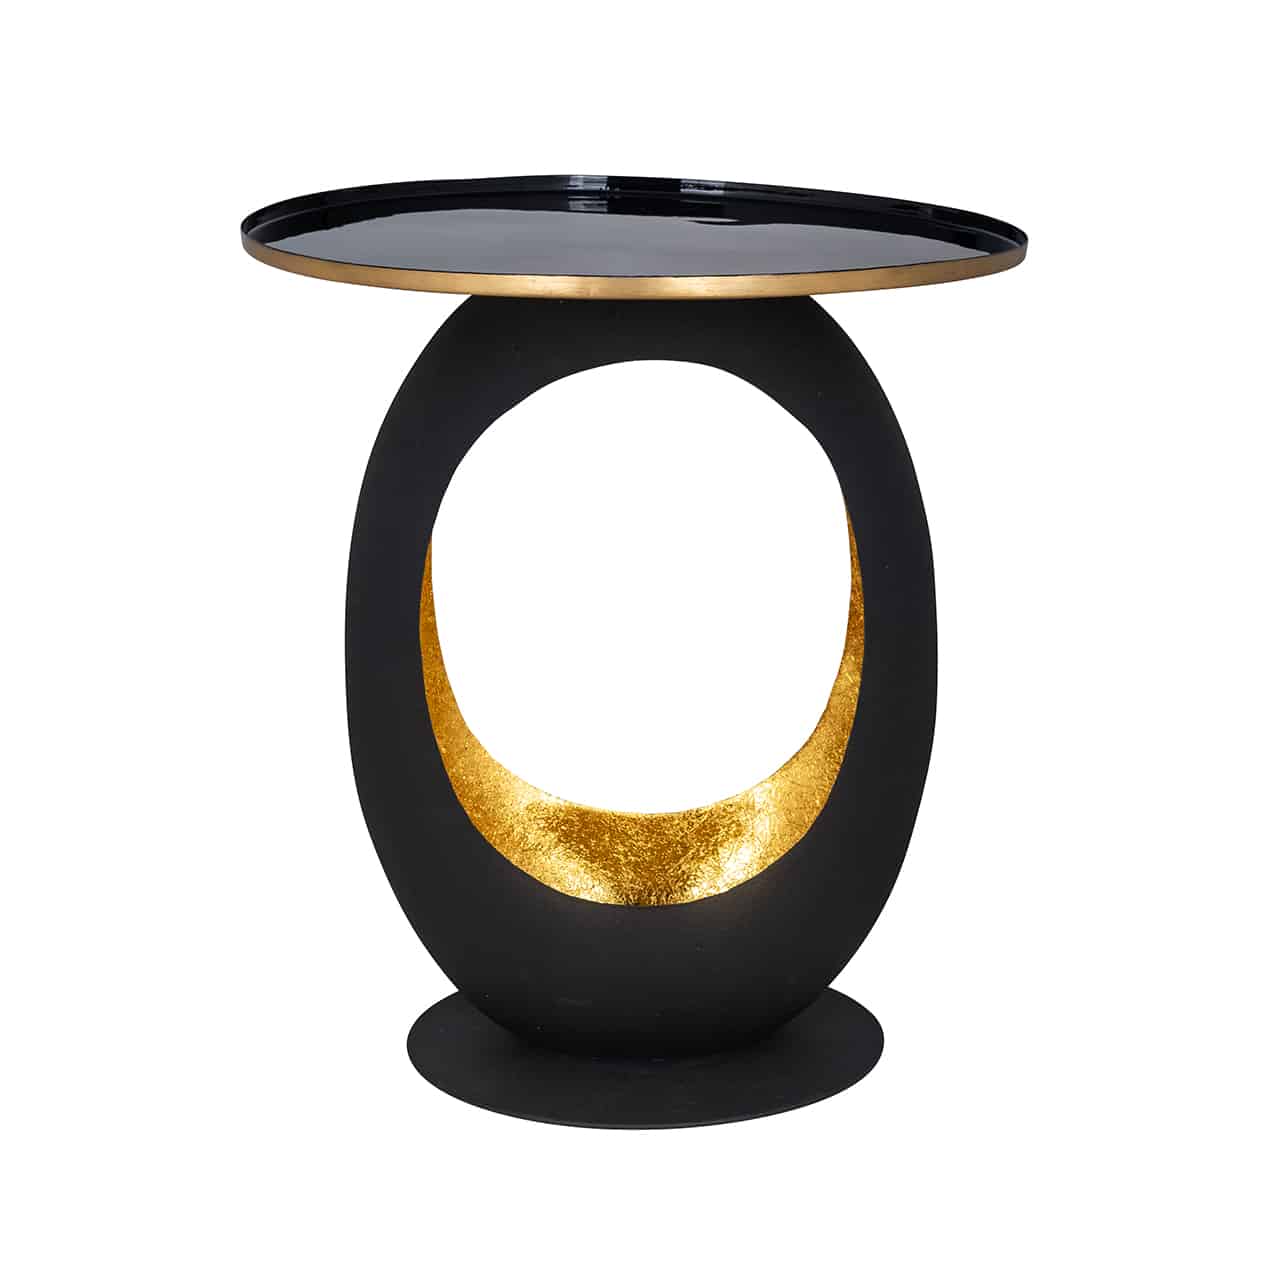 Beistelltisch in schwarz gold; auf einer schwarzen Bodenplatte ein ovales Gebilde, innen hohl und goldfarben; darauf einerune Tischplatte in schwarz mit goldenem Rand.